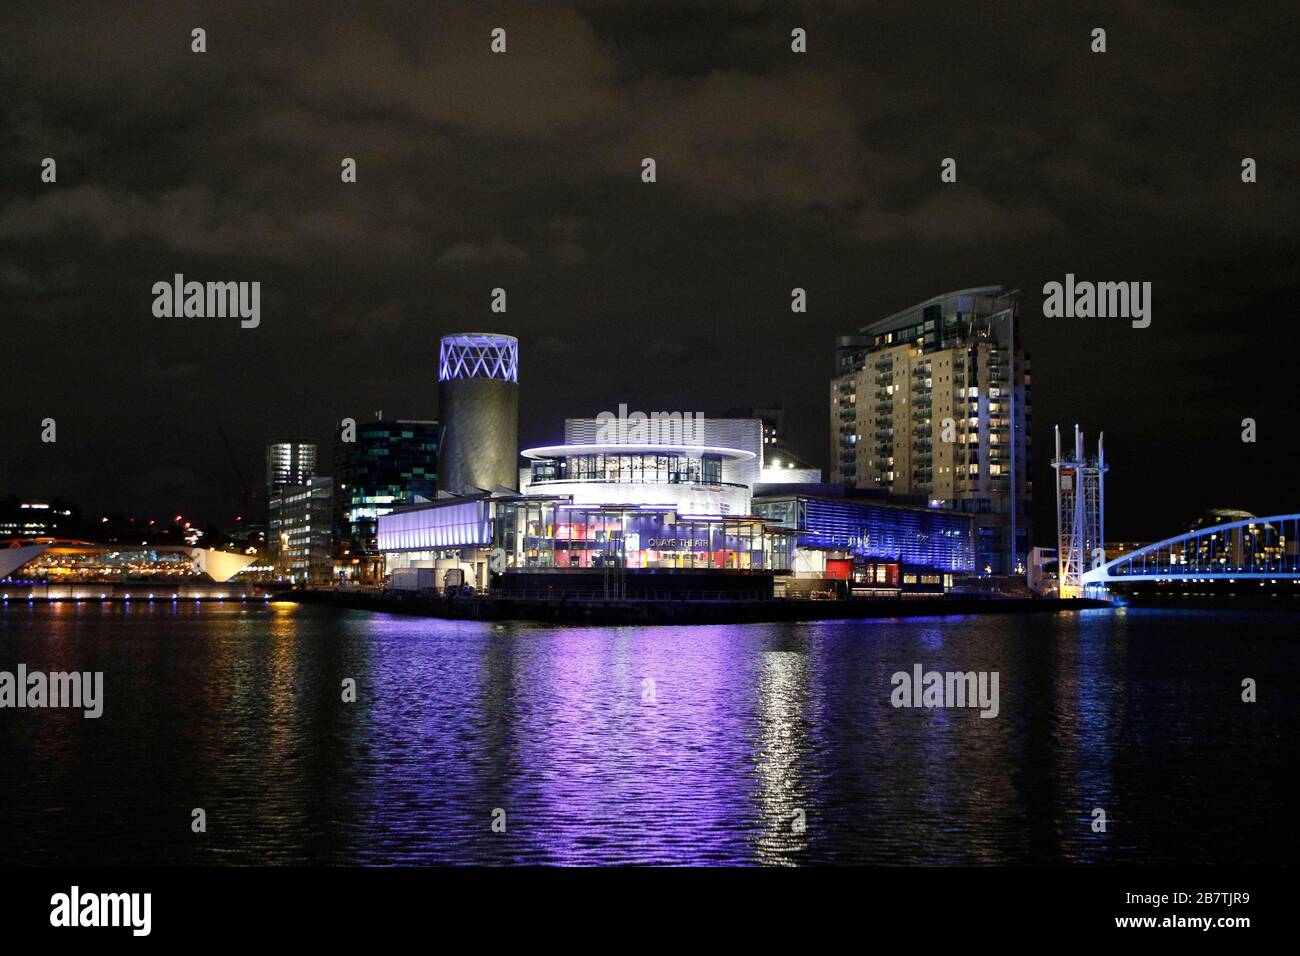 El Teatro Quays, visto por la noche, en Salford Quays, cerca de Manchester, Inglaterra. - 14 de marzo de 2020 Fotografía de Andrew Higgins/mil Word Media NO SAL Foto de stock